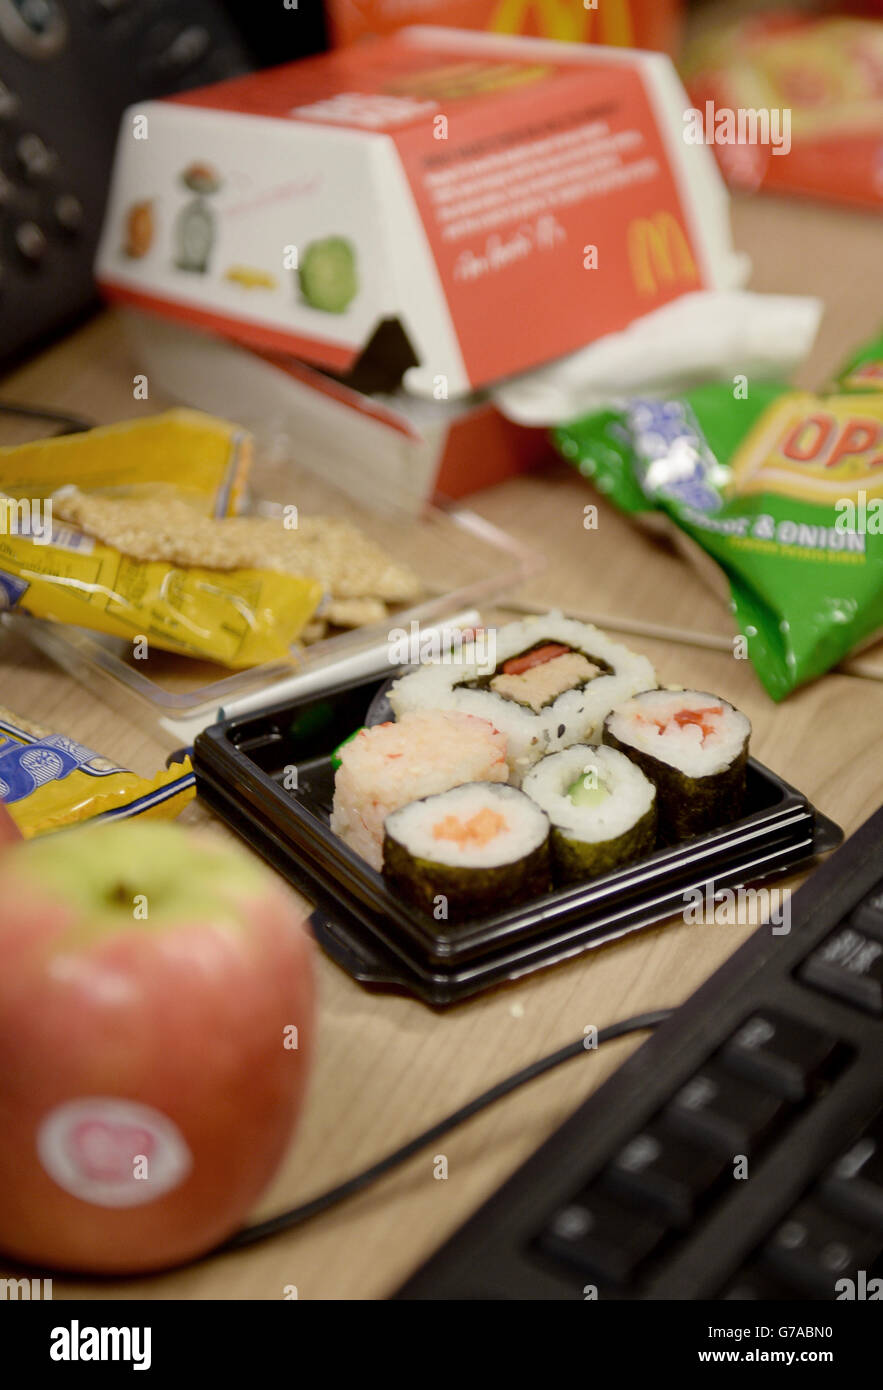 Eine McDonald's Big Mac Box und ein Paket Sushi sind auf benachbarten  Schreibtischen in London zu sehen Stockfotografie - Alamy